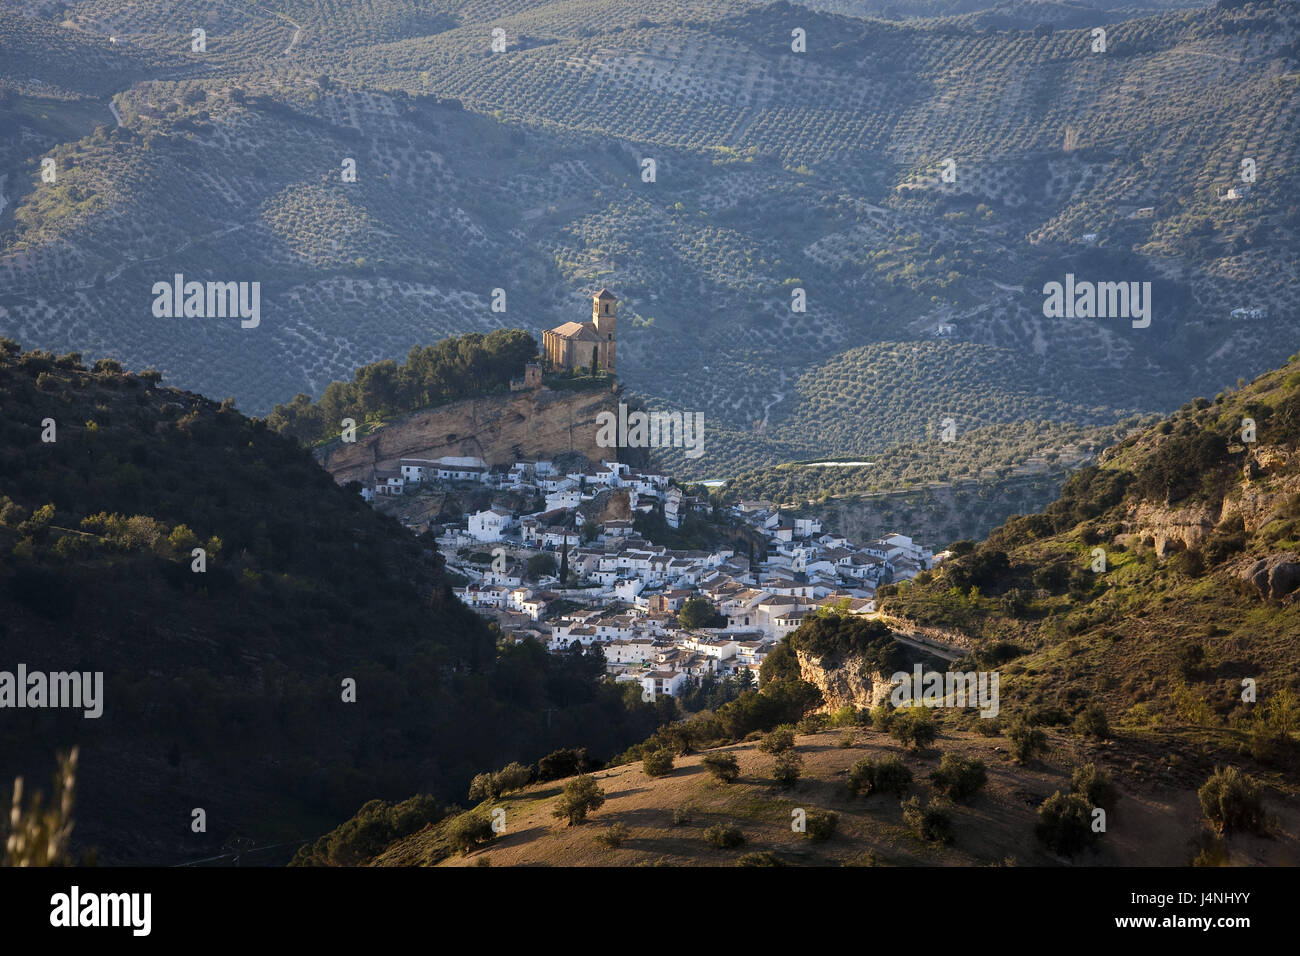 España, Andalucía, Montefrío, vista local, Foto de stock